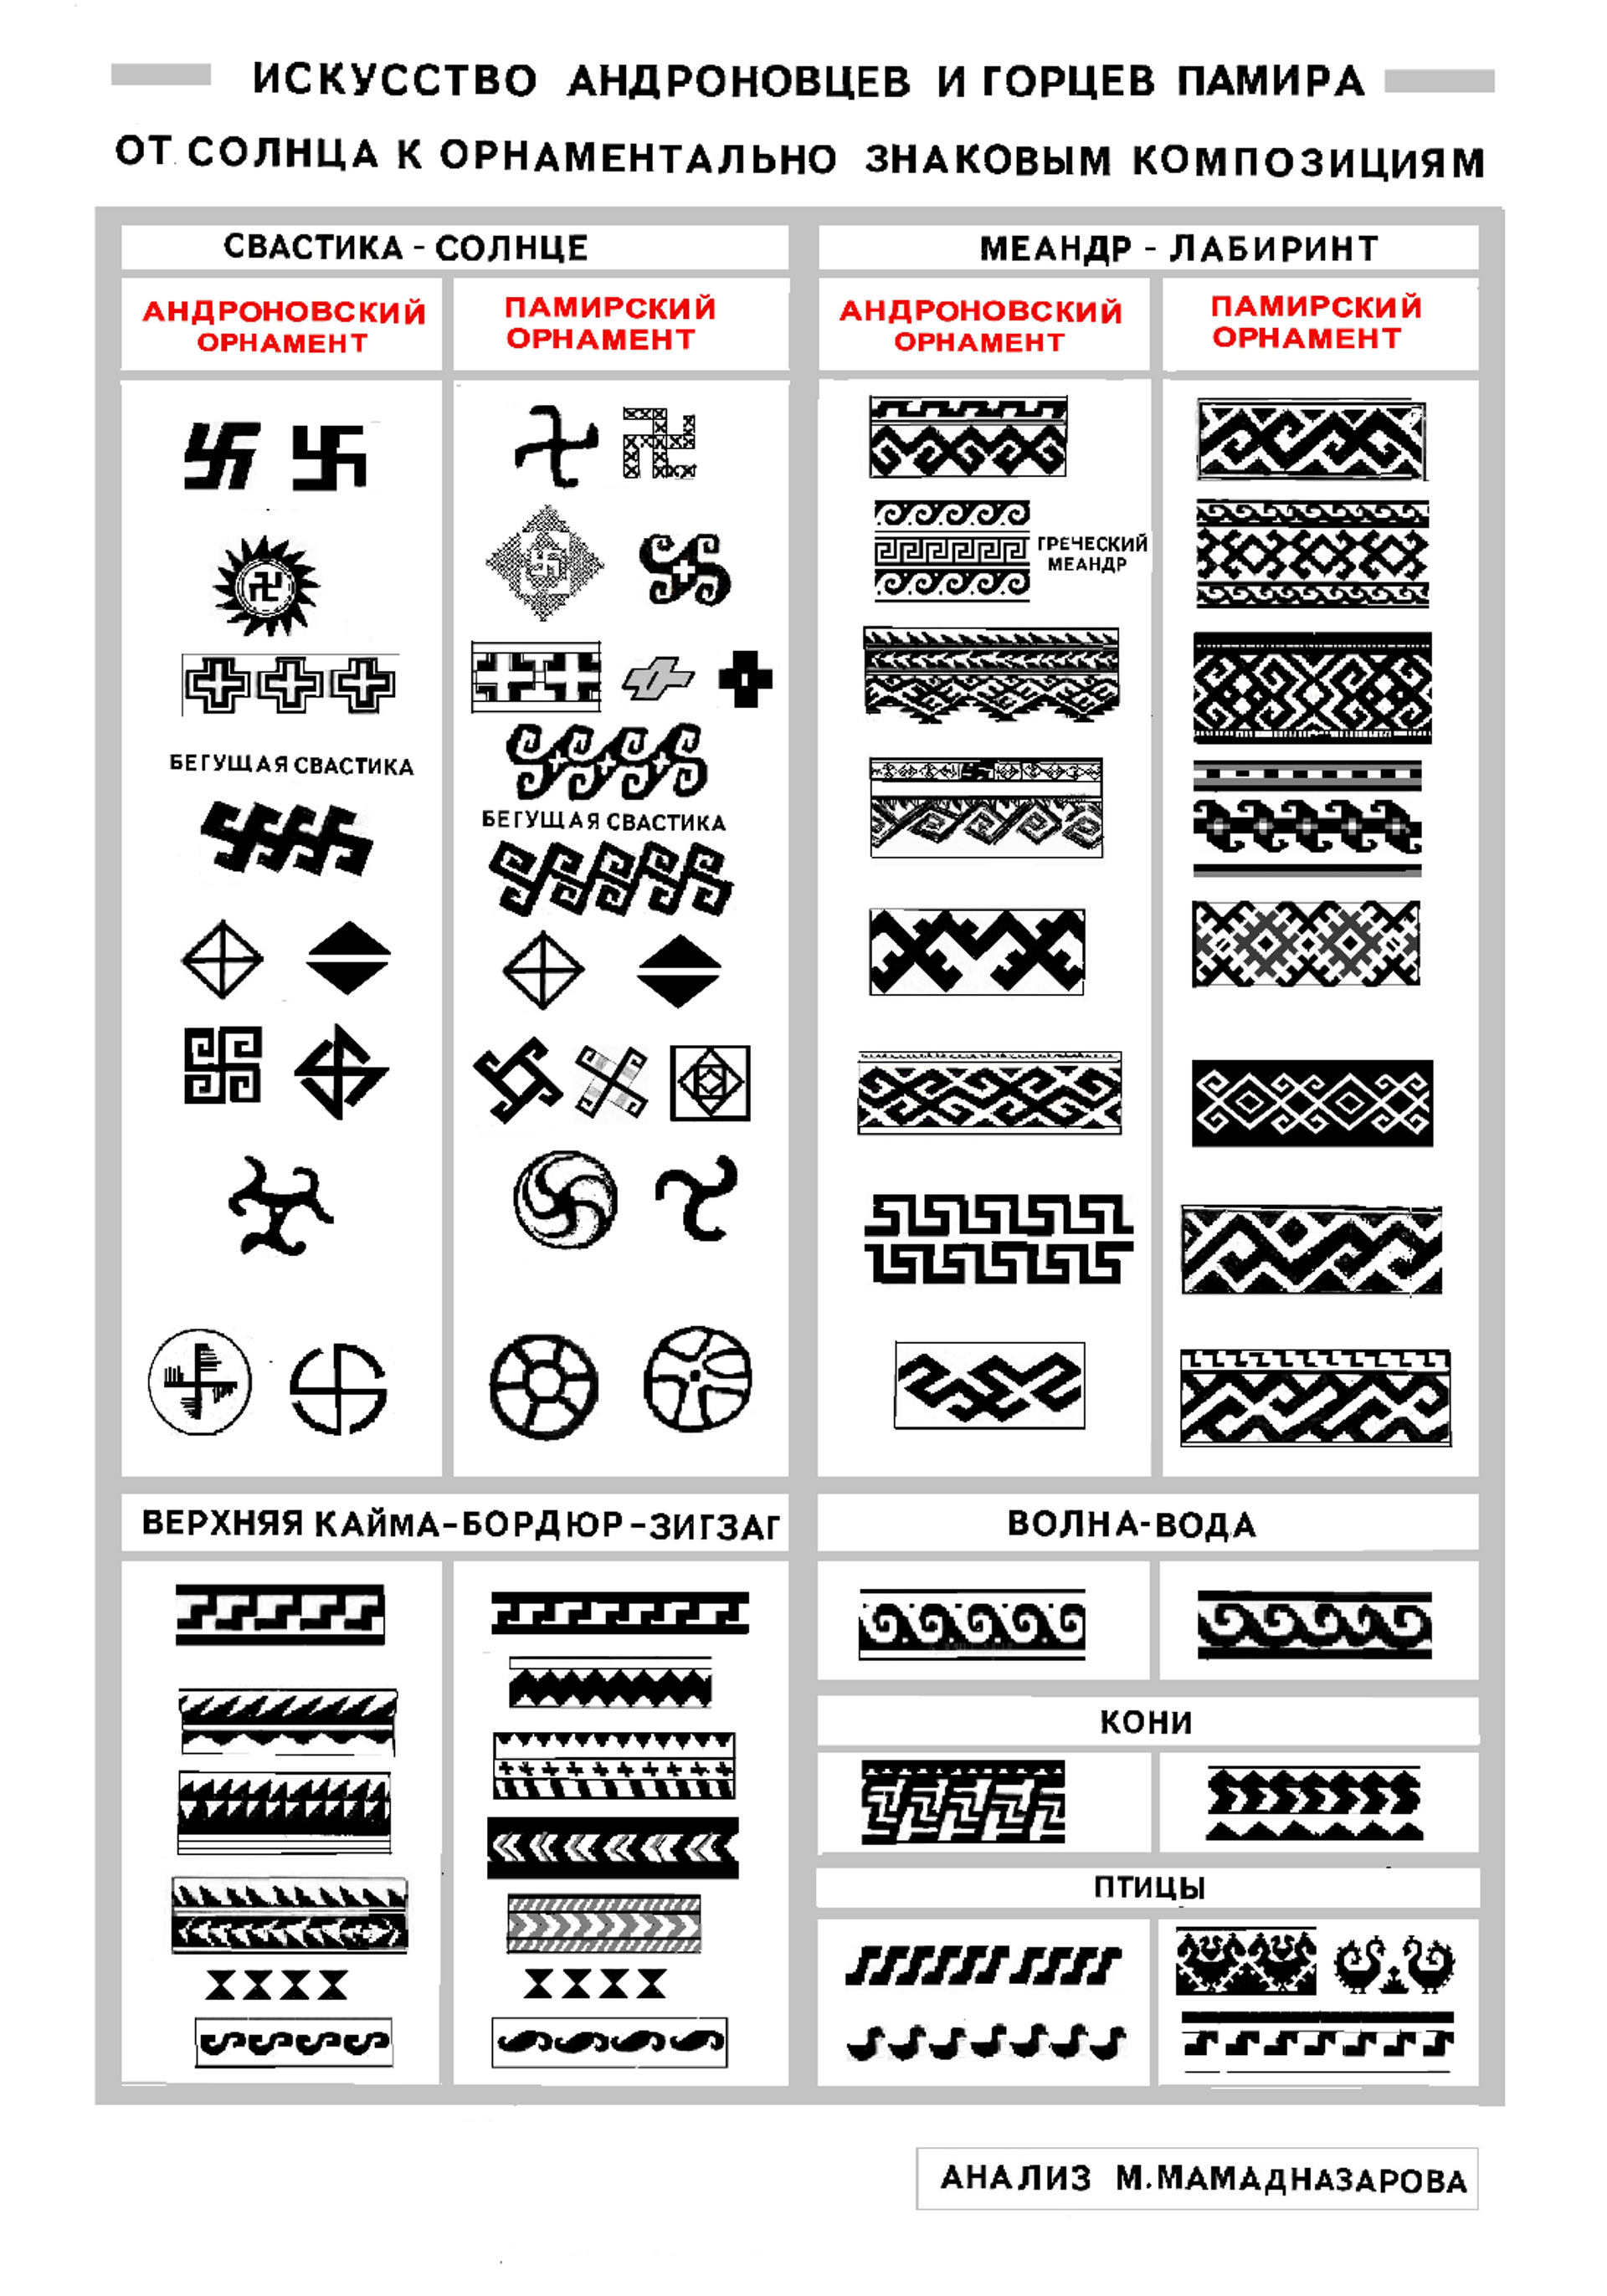 Типы орнаментов в искусстве памирцев - Sputnik Таджикистан, 1920, 29.06.2021